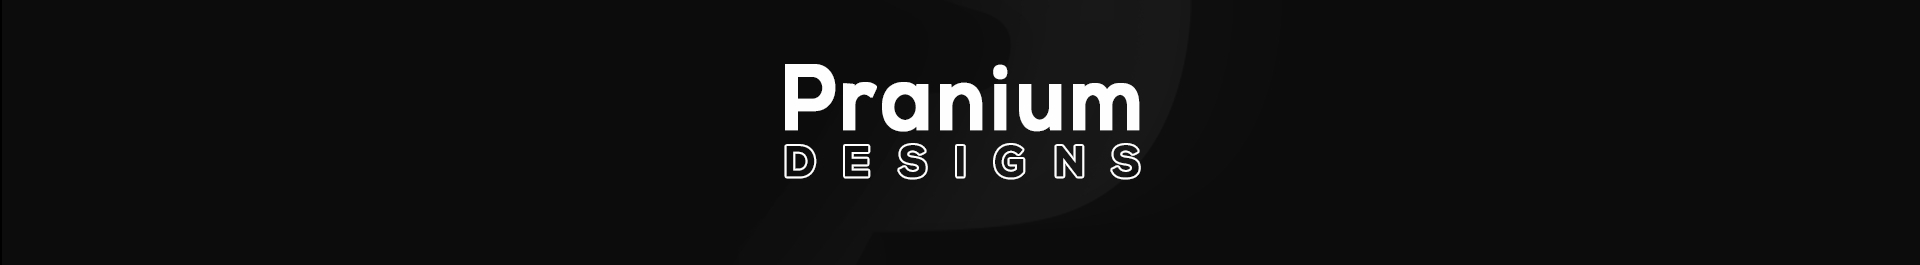 Pranium Designs のプロファイルバナー